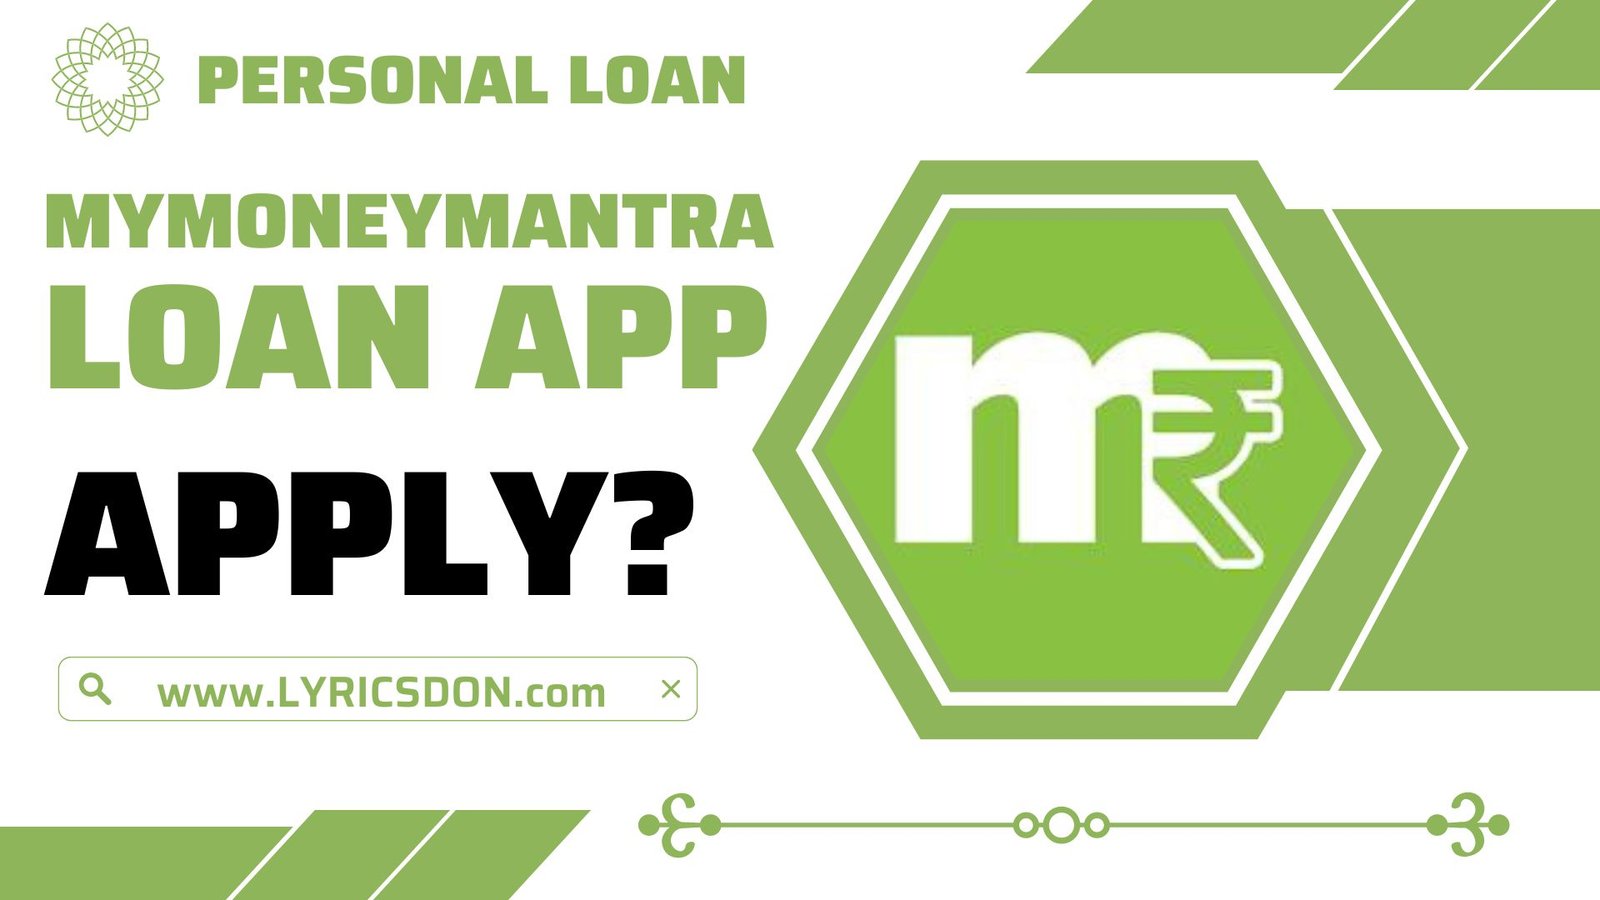 MyMoneyMantra Loan App से लोन कैसे लें?